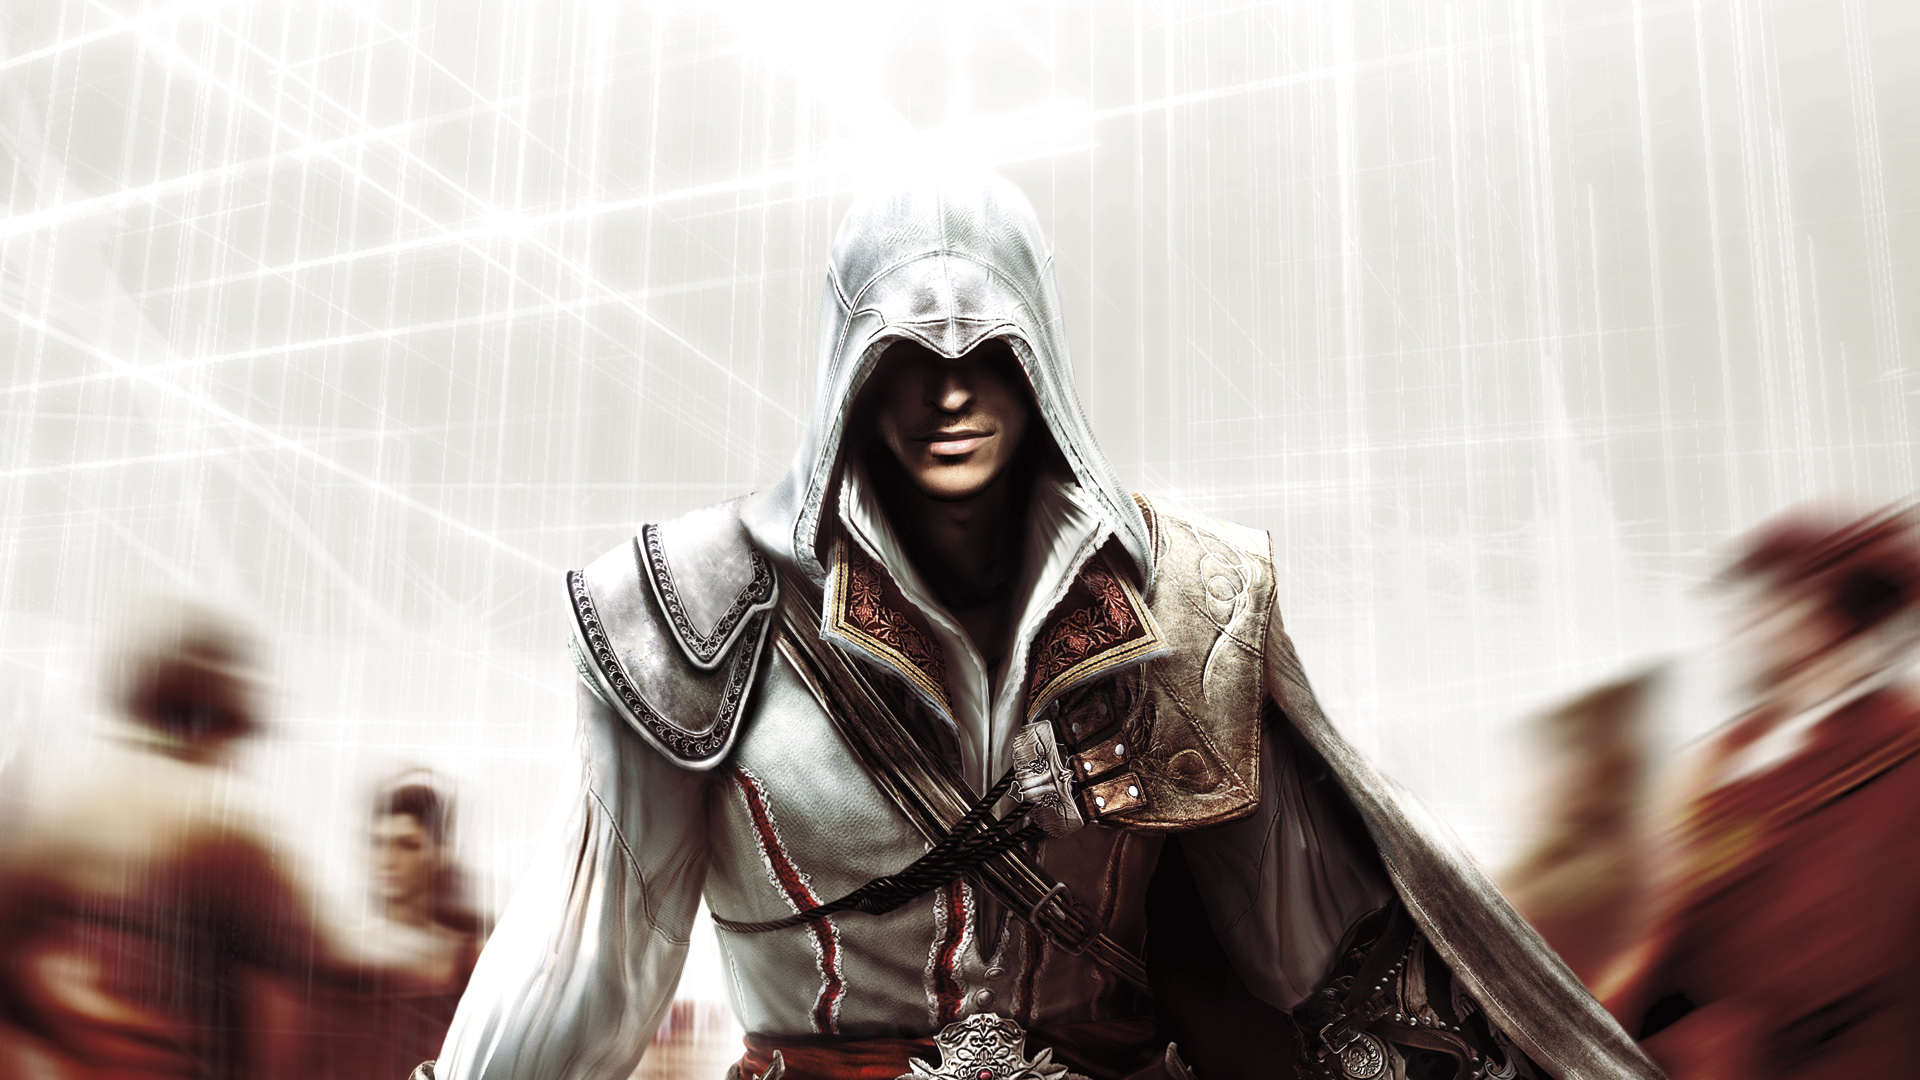 Soporte de Assassin's Creed II | Ubisoft Help oficial